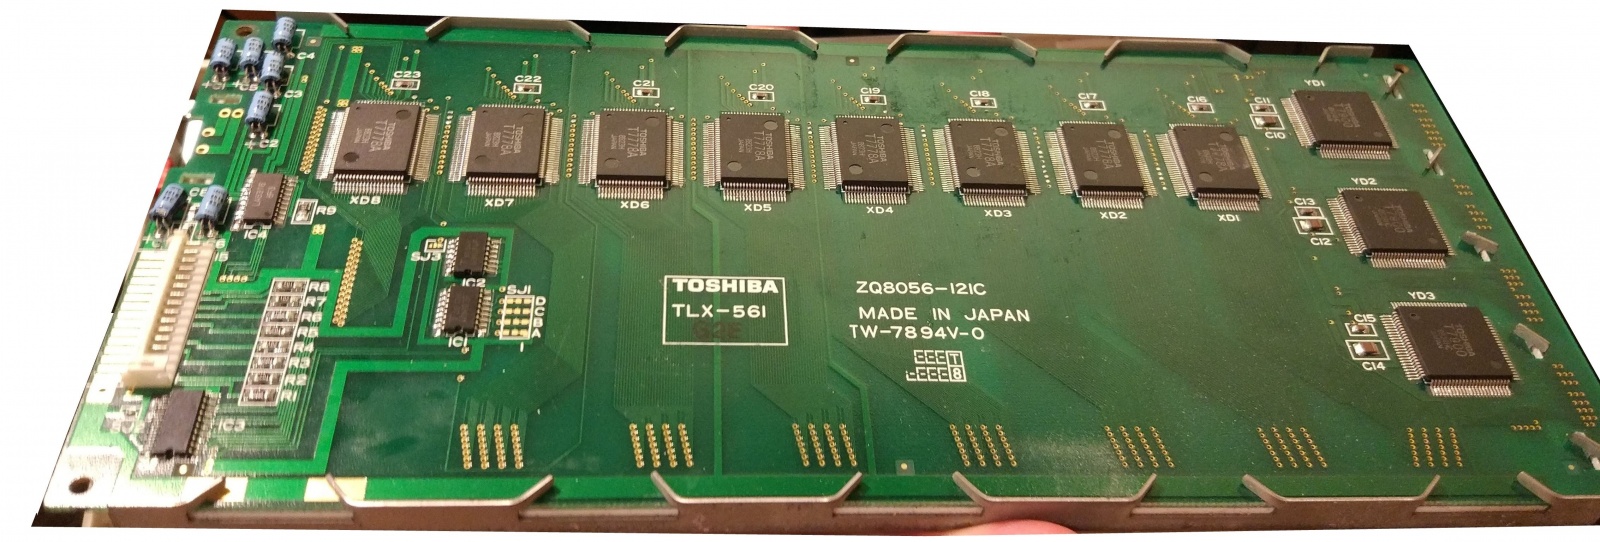 Дисплей Toshiba TLX-561 - такие устанавливались в некоторые ноутбуки Электроника